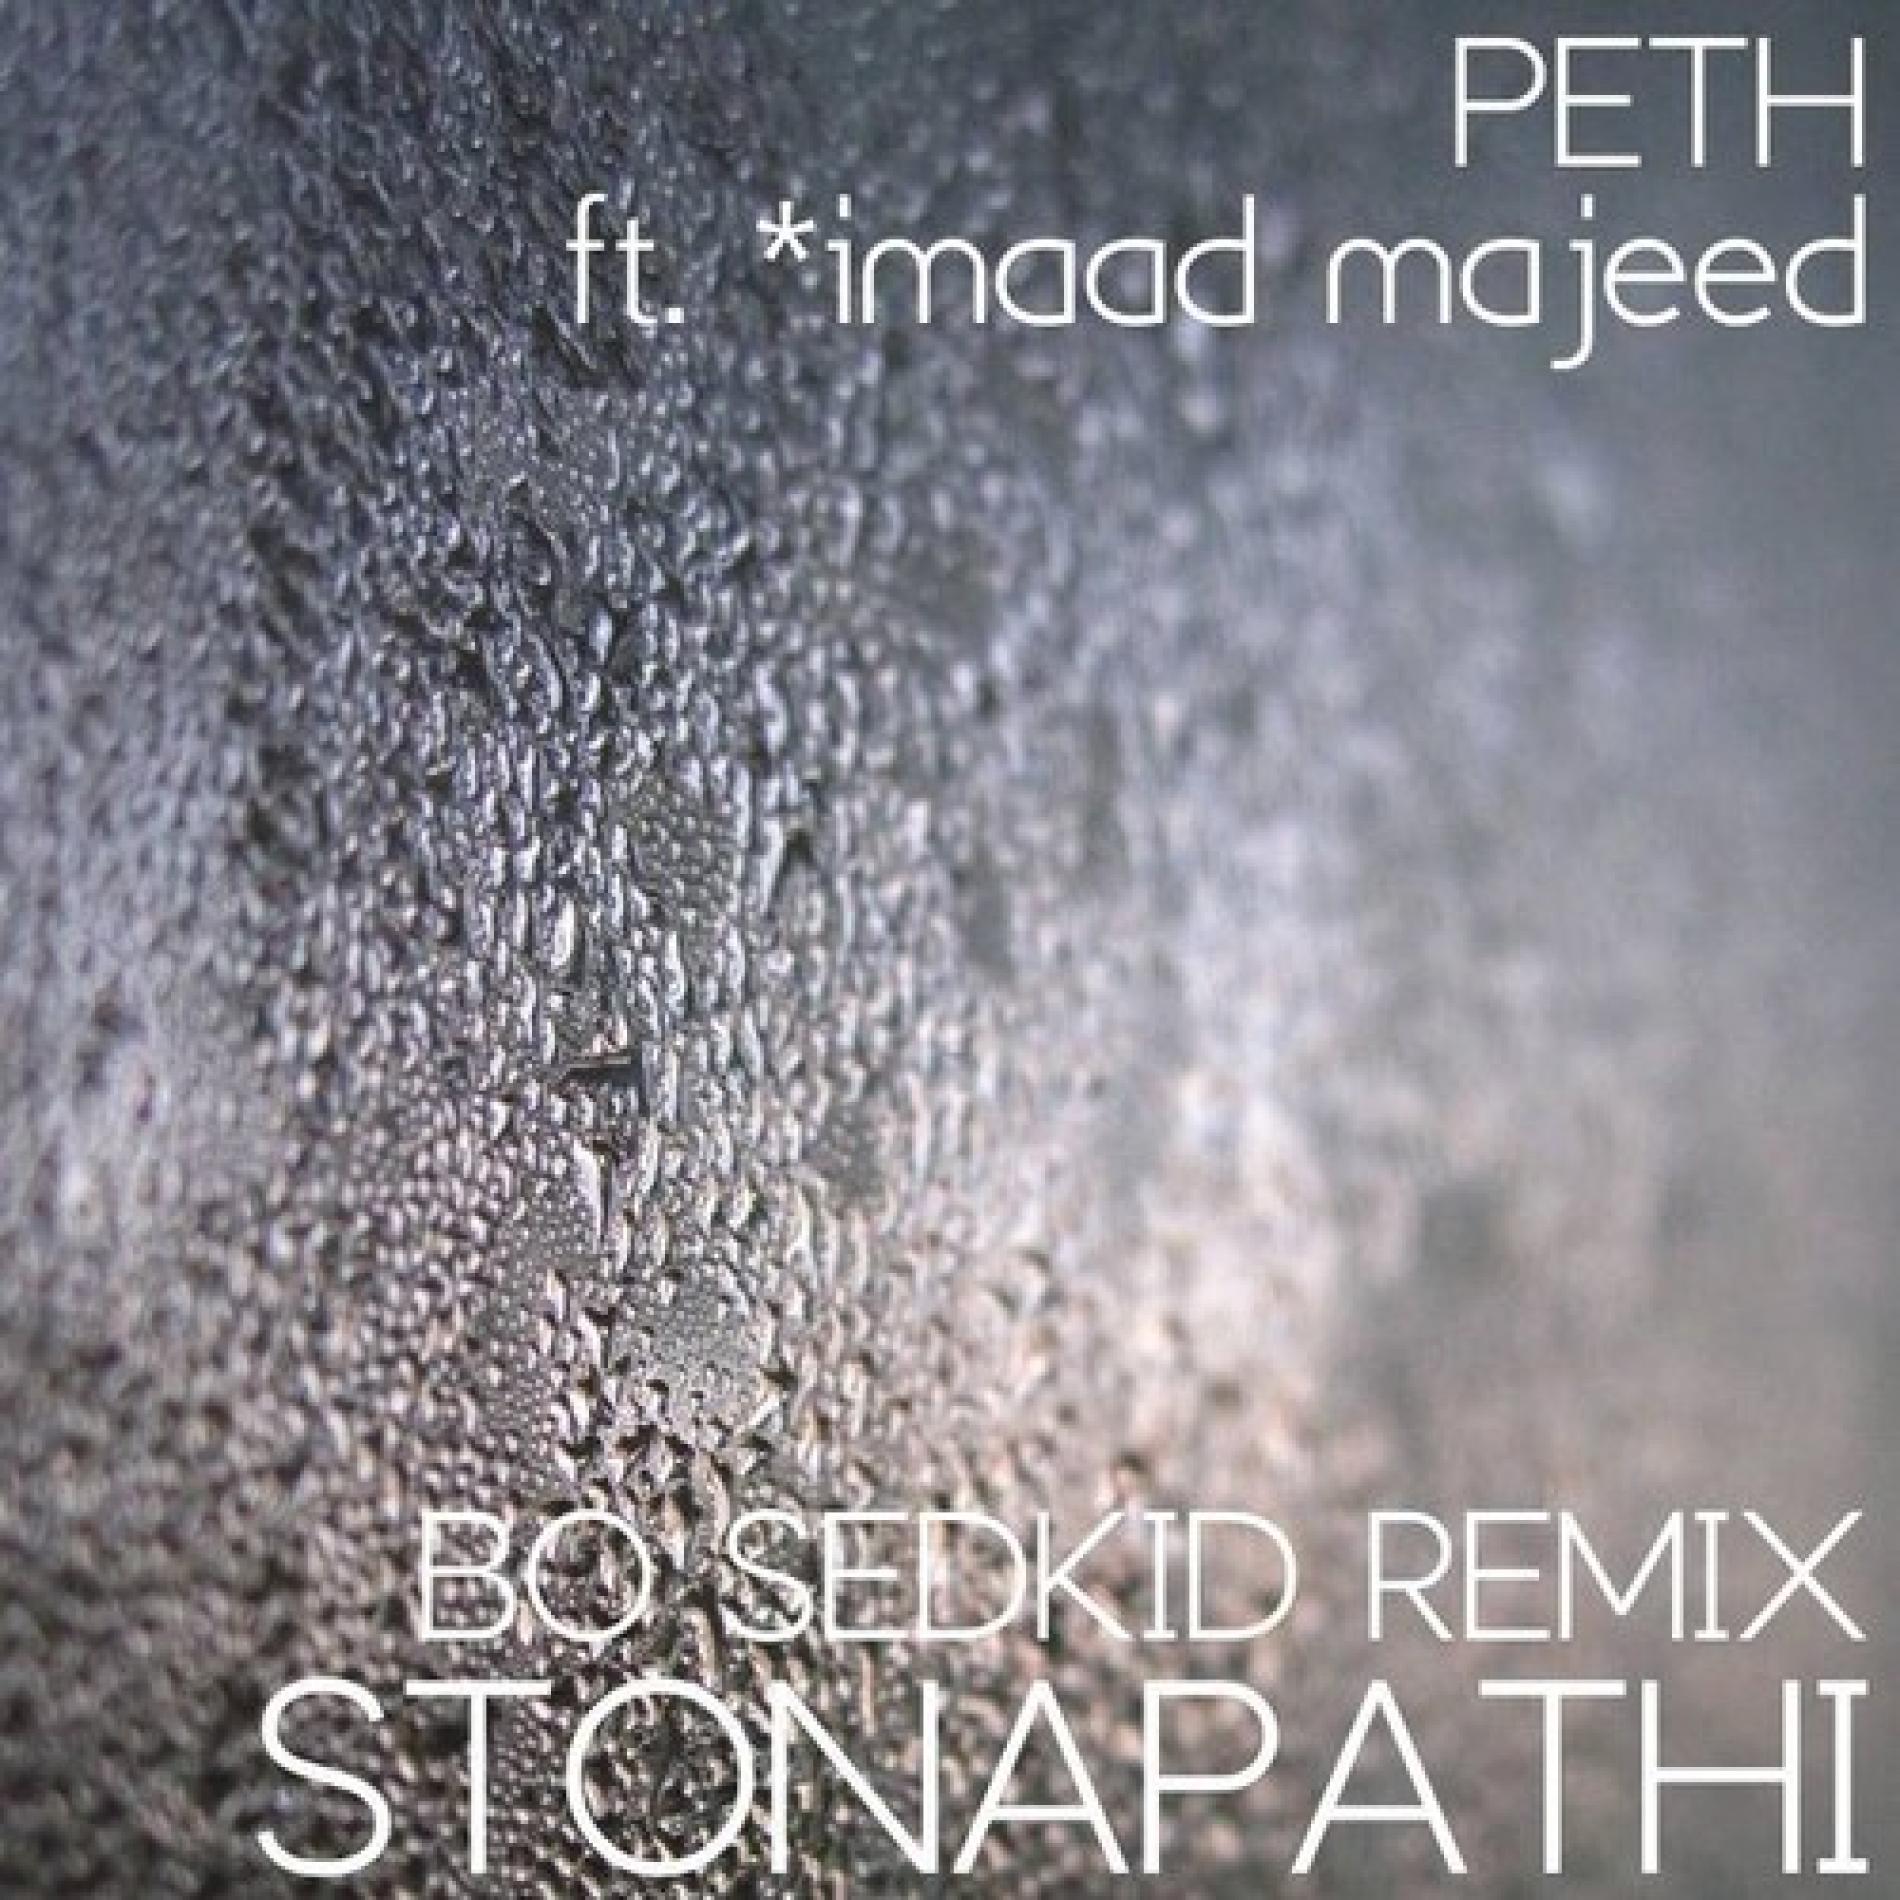 Stonapathi Ft imaad majeed – Peth (Bo Sedkid Remix)